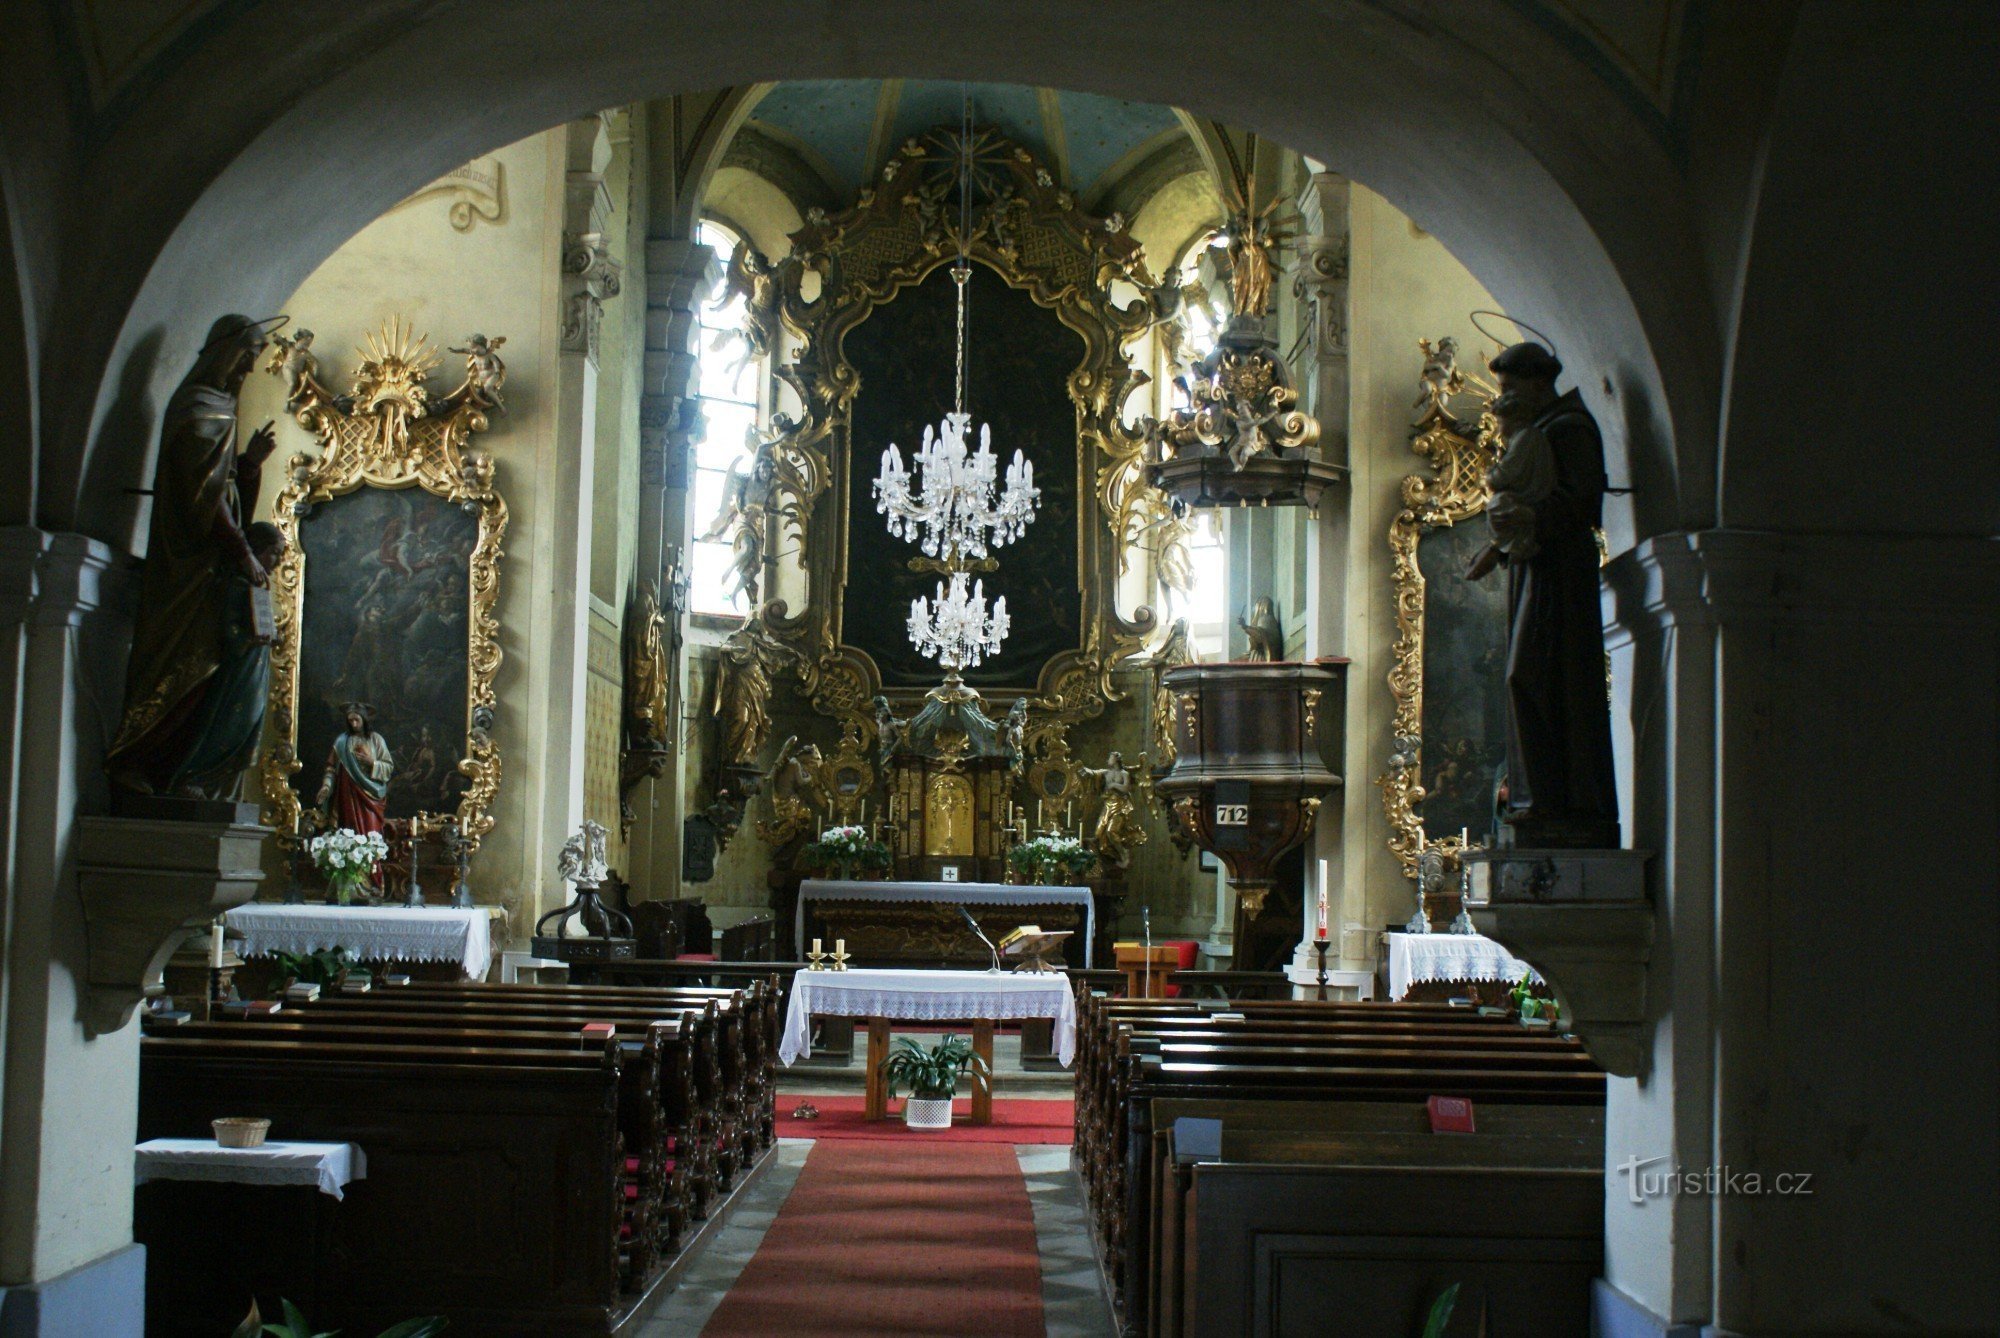 Kladruby (perto de Stříbr) – igreja de St. James com um lapidário de pedras cruzadas